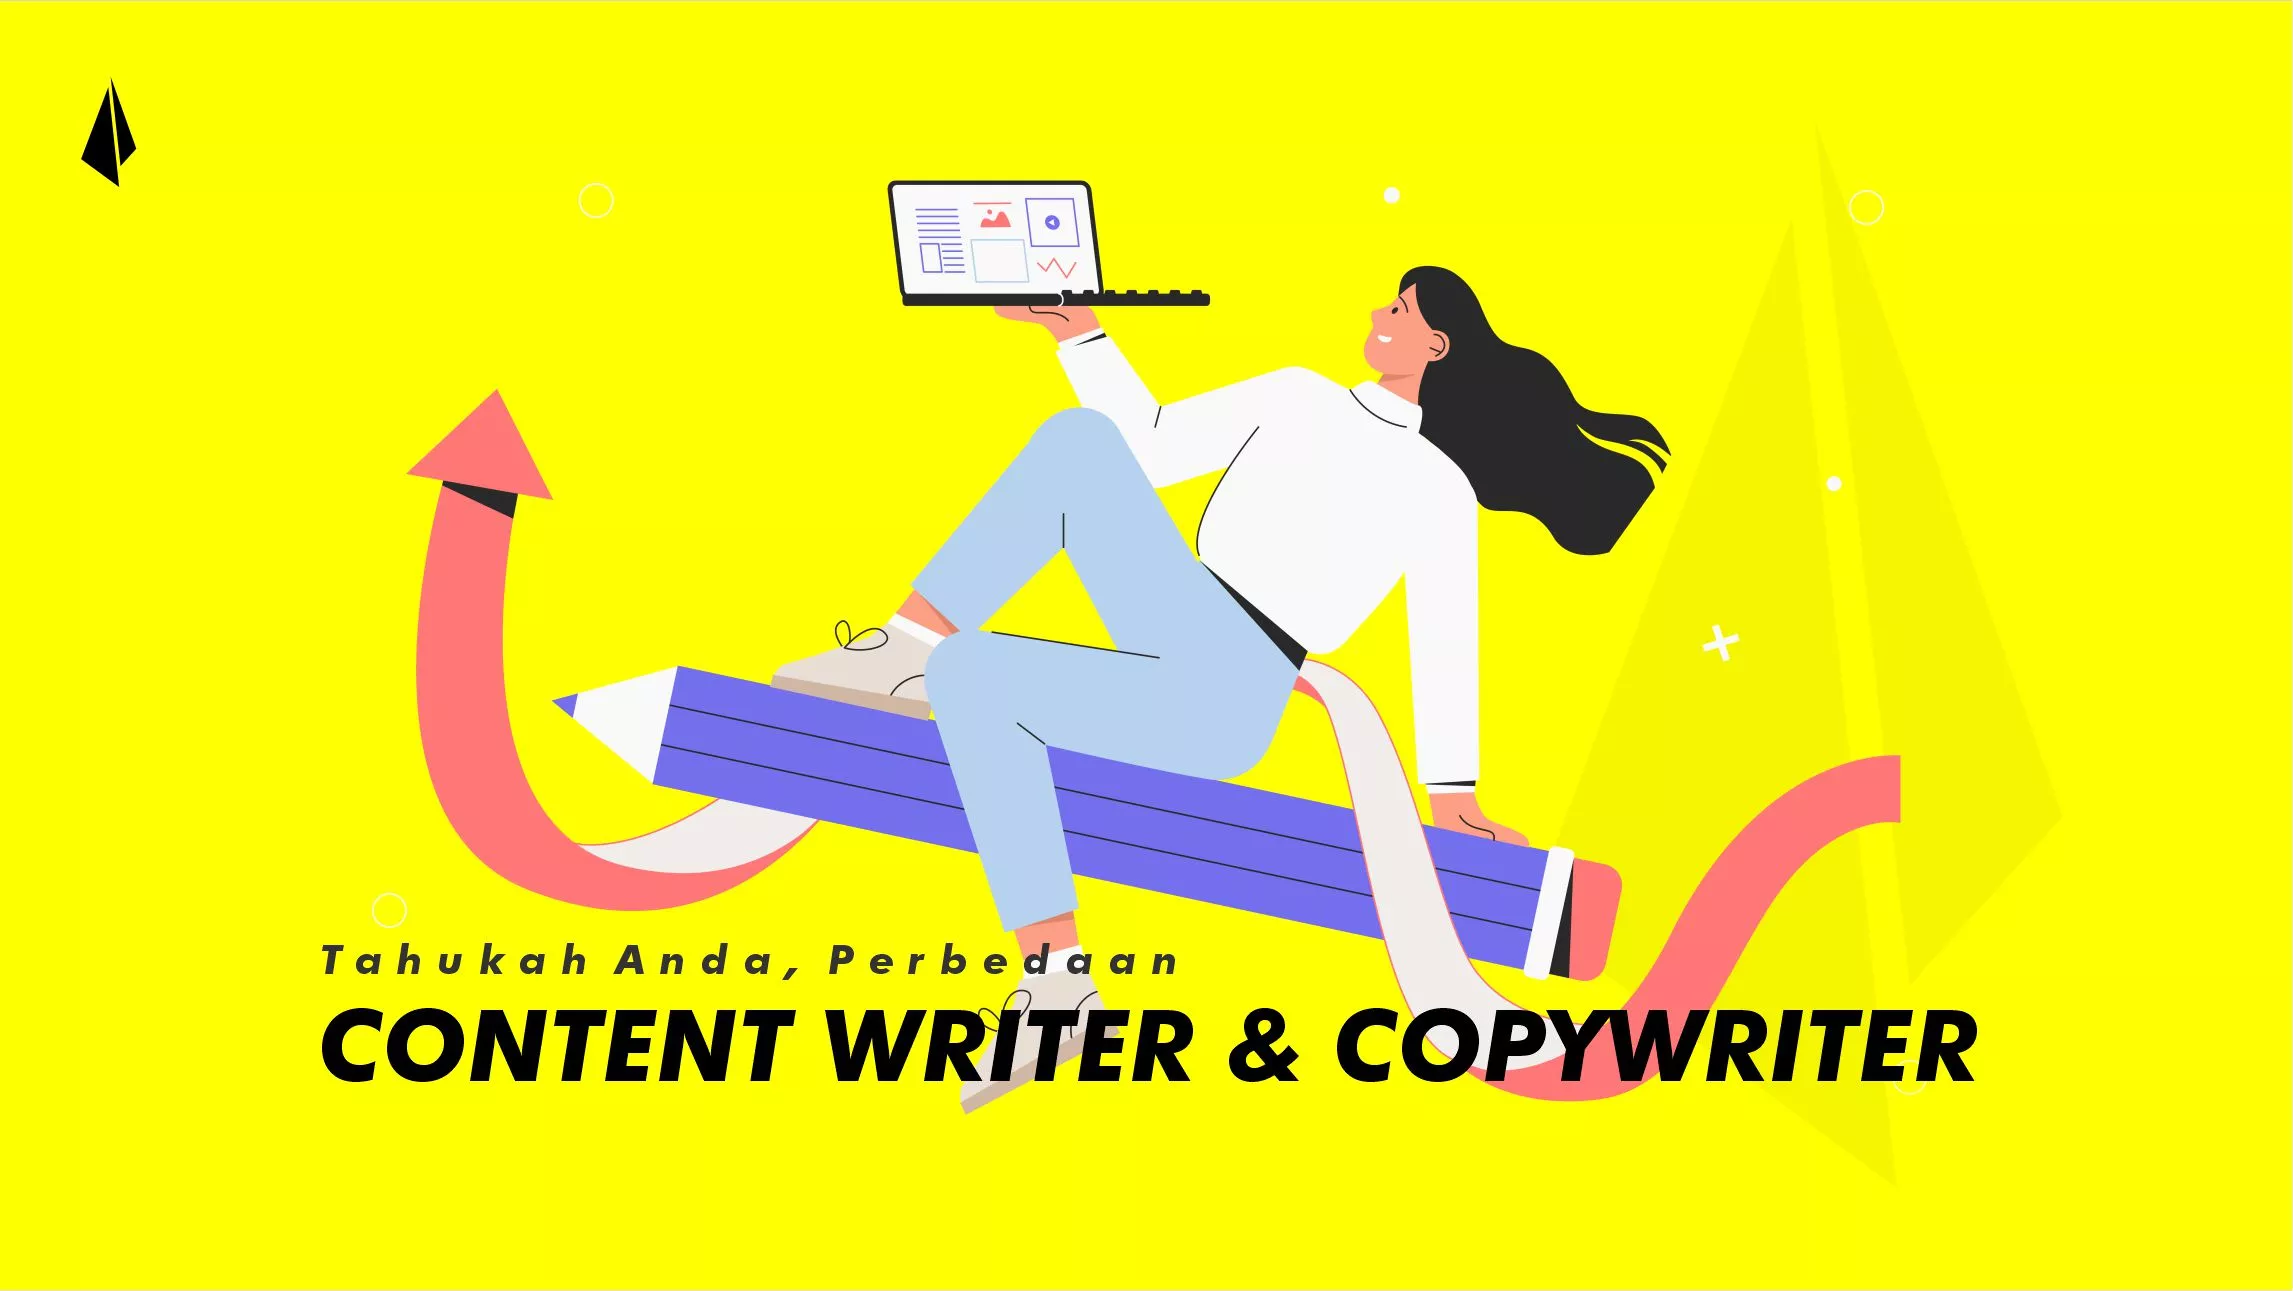 perbedaan content writer dan copywriter